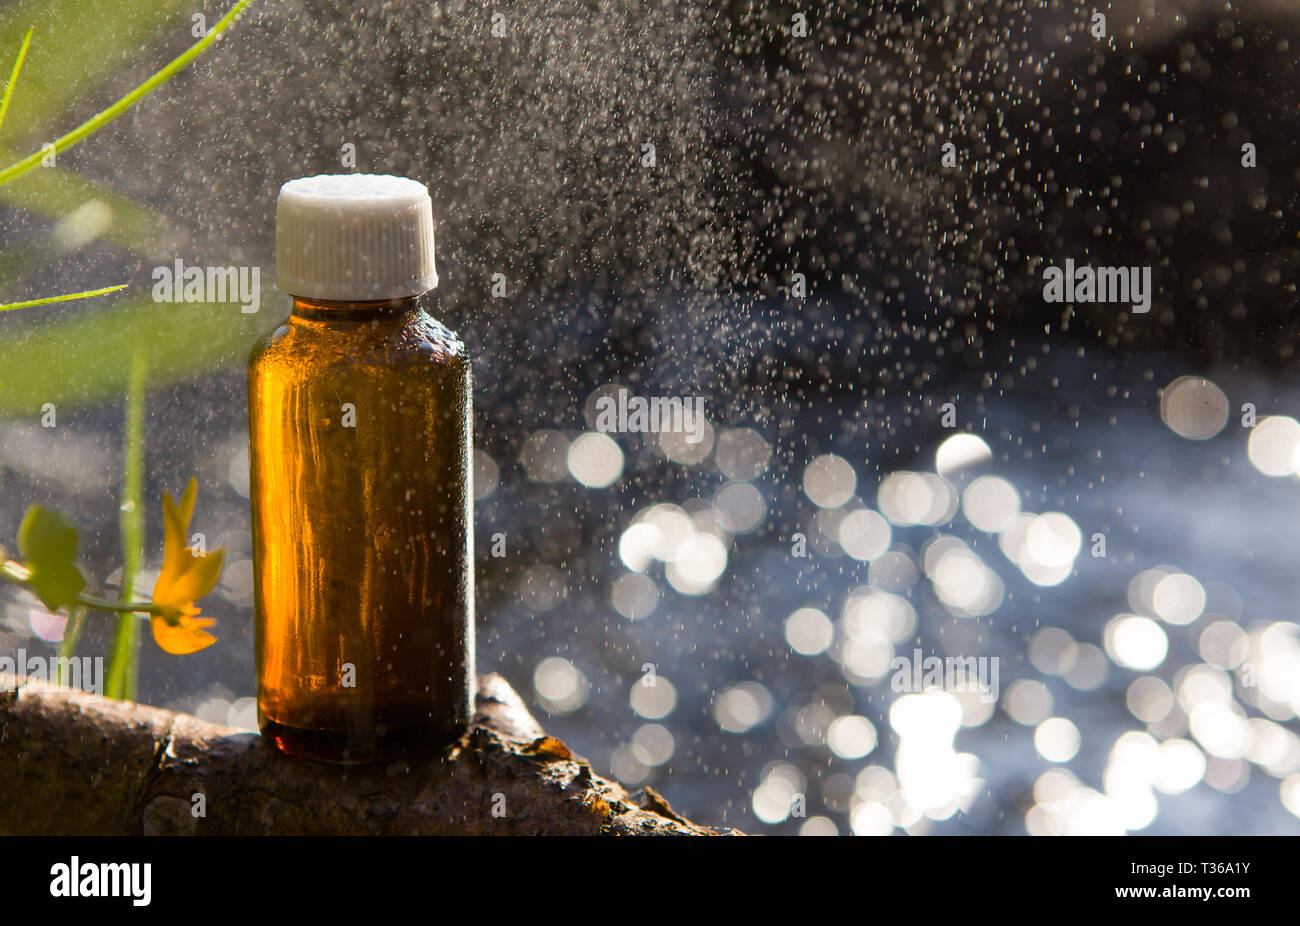 Naturopatía - aceites esenciales y plantas medicinales. Remedios naturales - medicamentos. Foto de stock